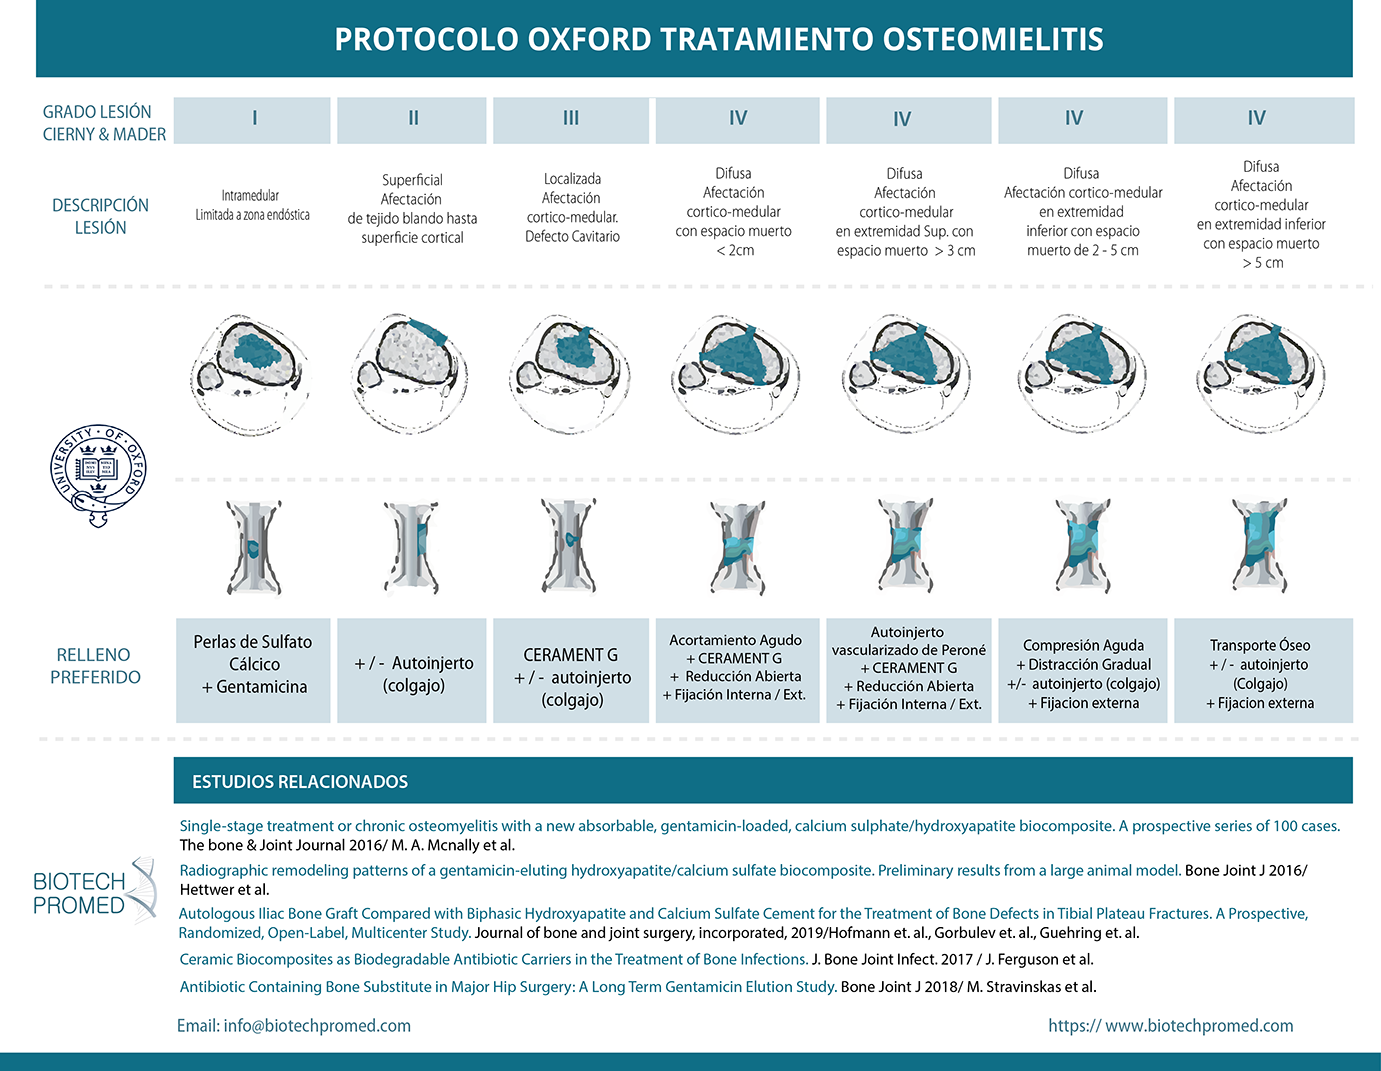 Aplicación del Cerament según protocolo de Oxford en el tratamiento de la osteomielitis. https://biotechpromed.com